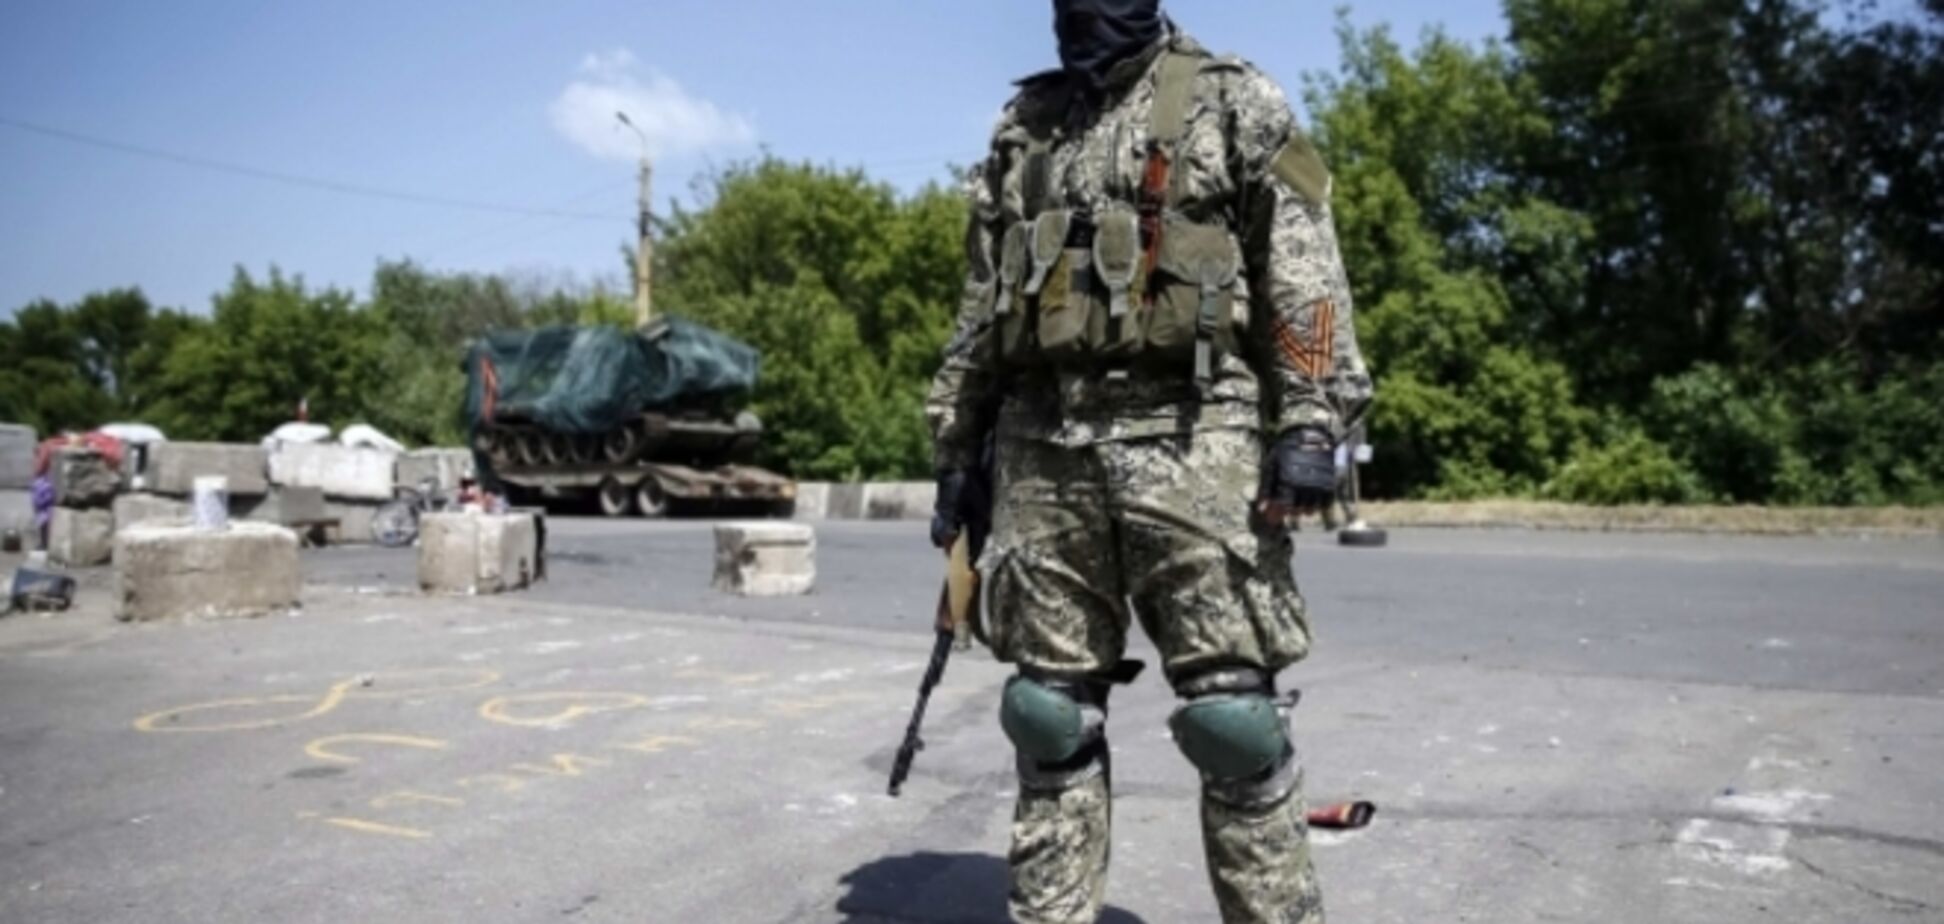 За неделю в Донецке похитили 14 человек - мэр